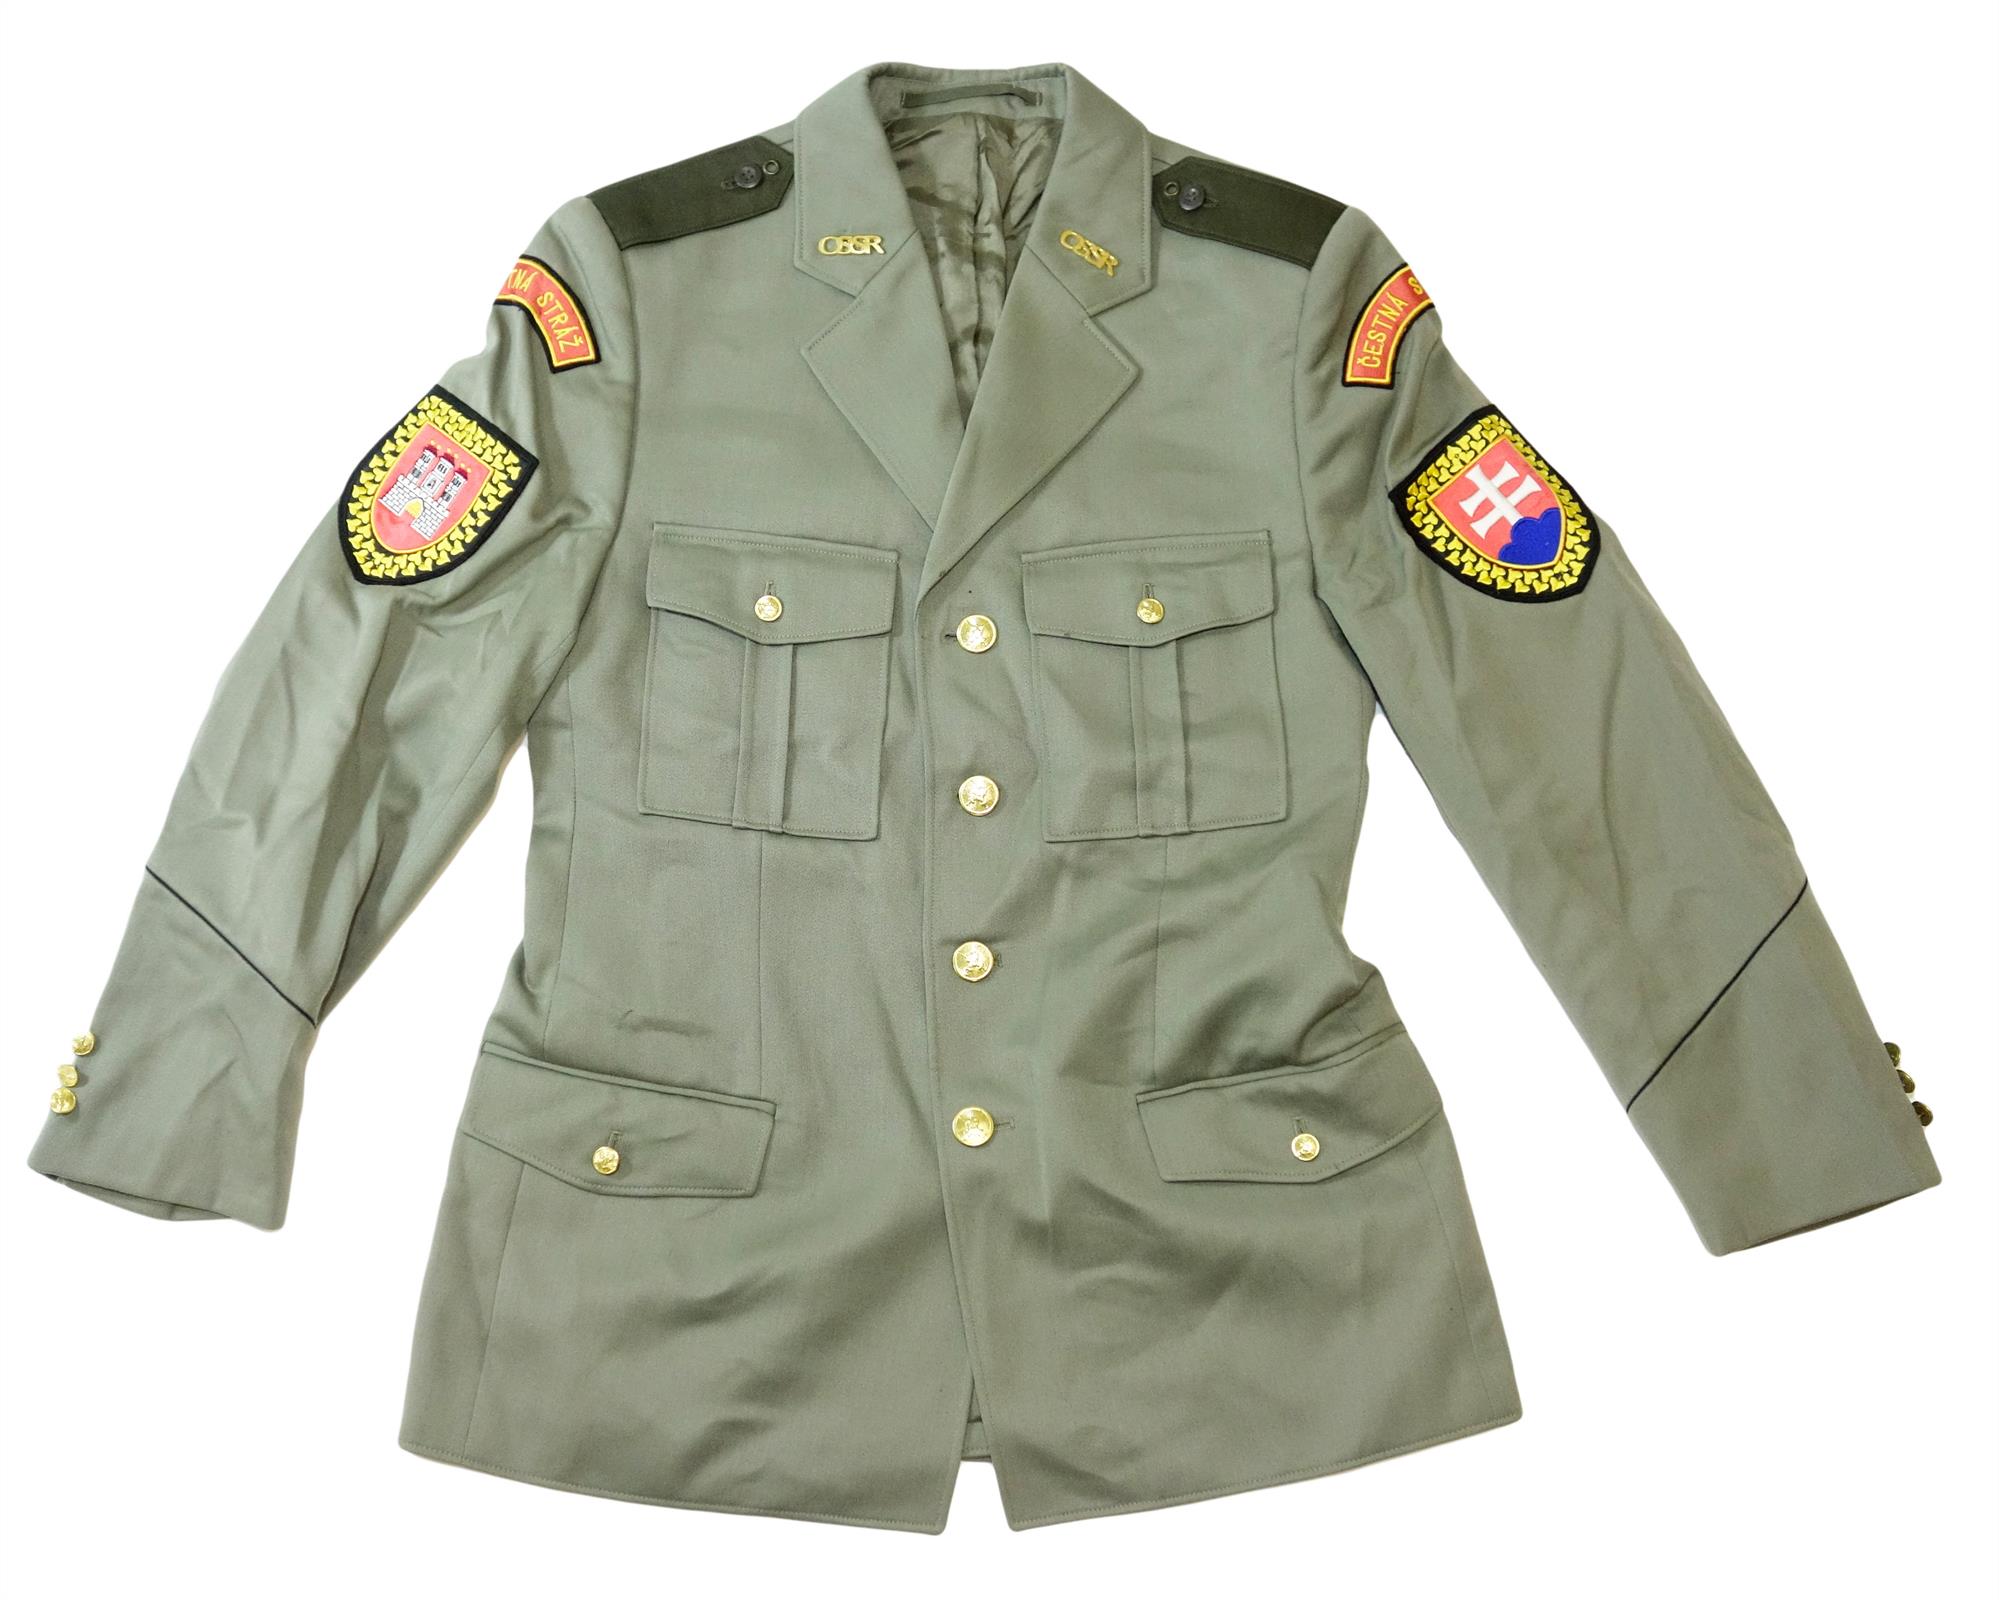 Unissued Slovakian Army Surplus Lined Uniform Jacked - Surplus & Lost